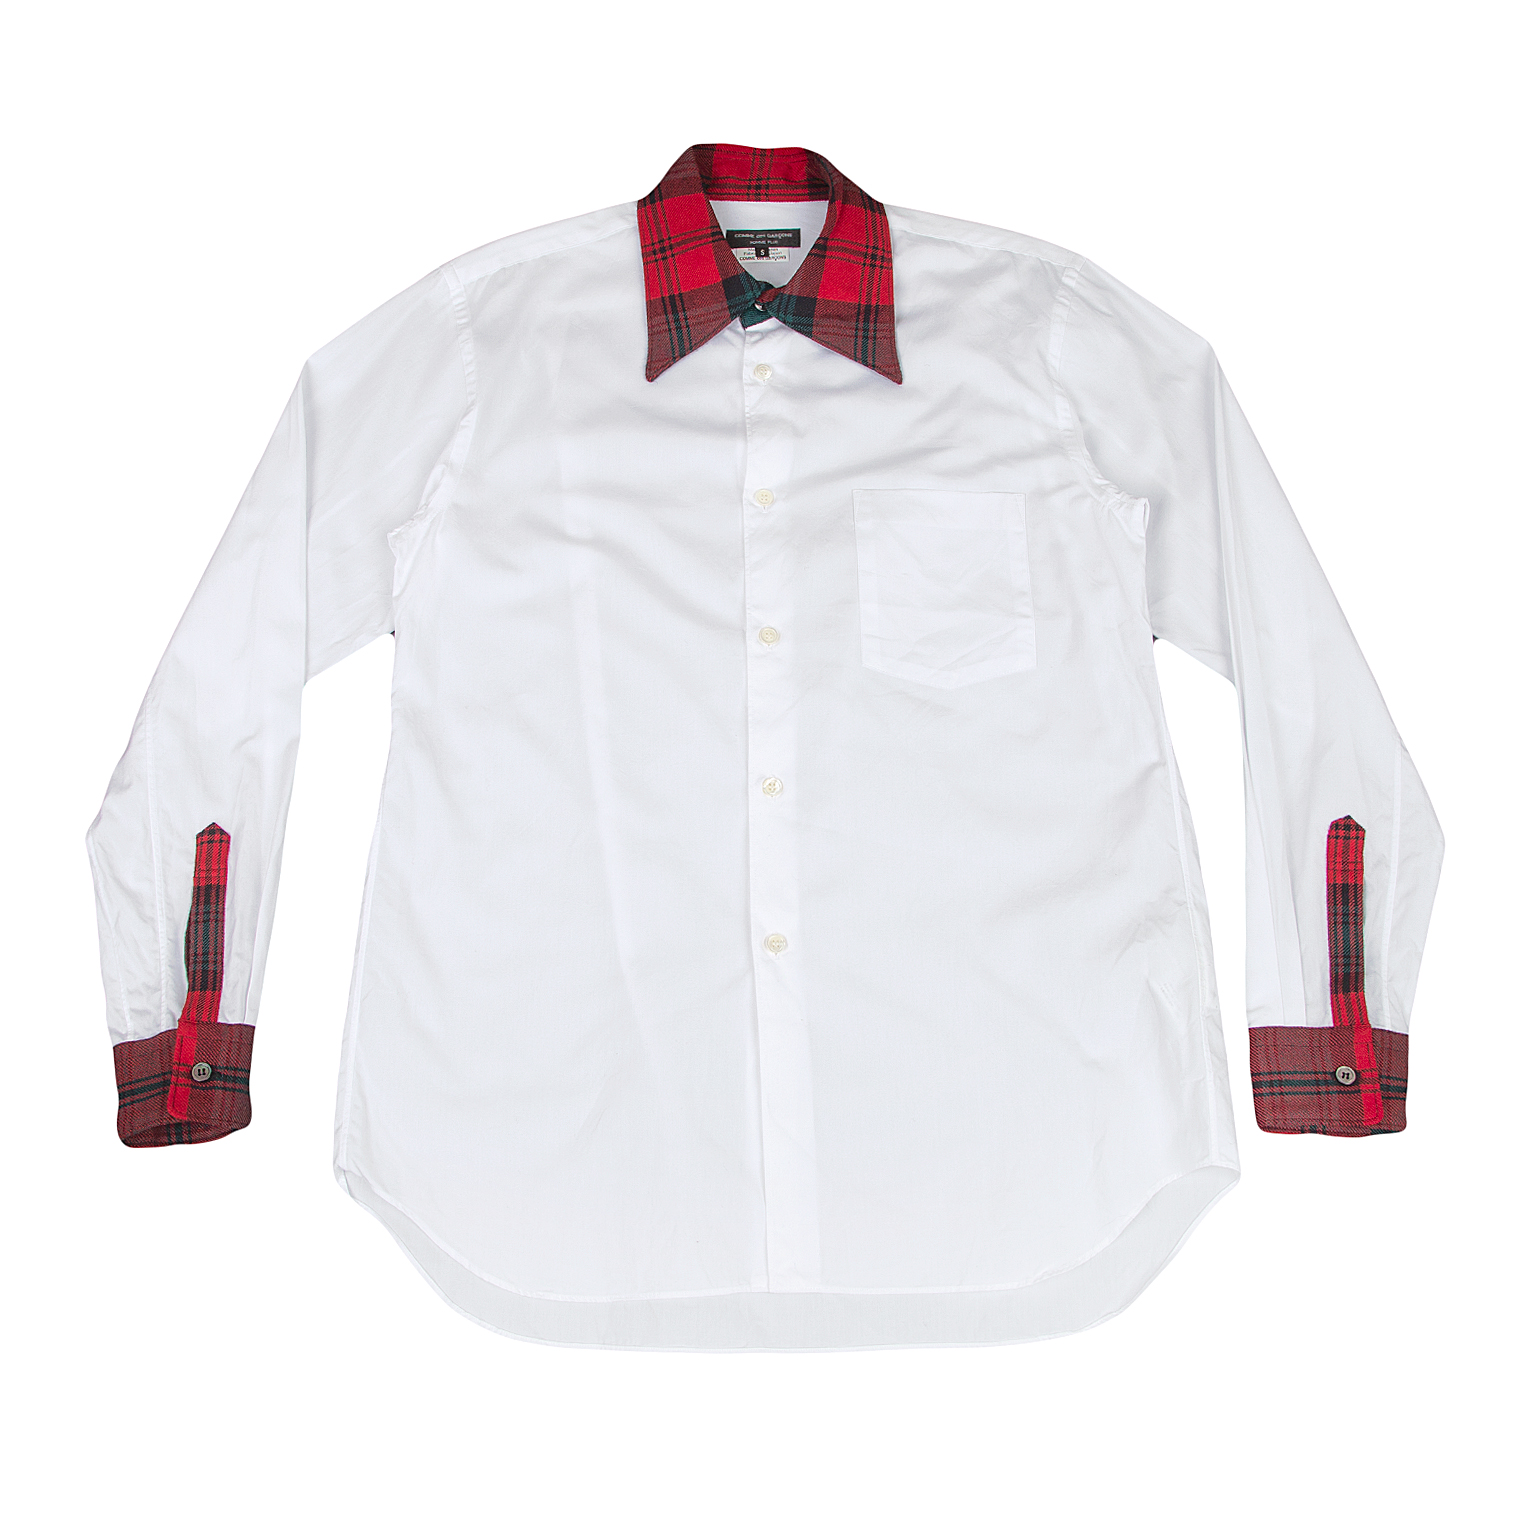 COMME des GARCONS HOMME カジュアルシャツ M 赤x白